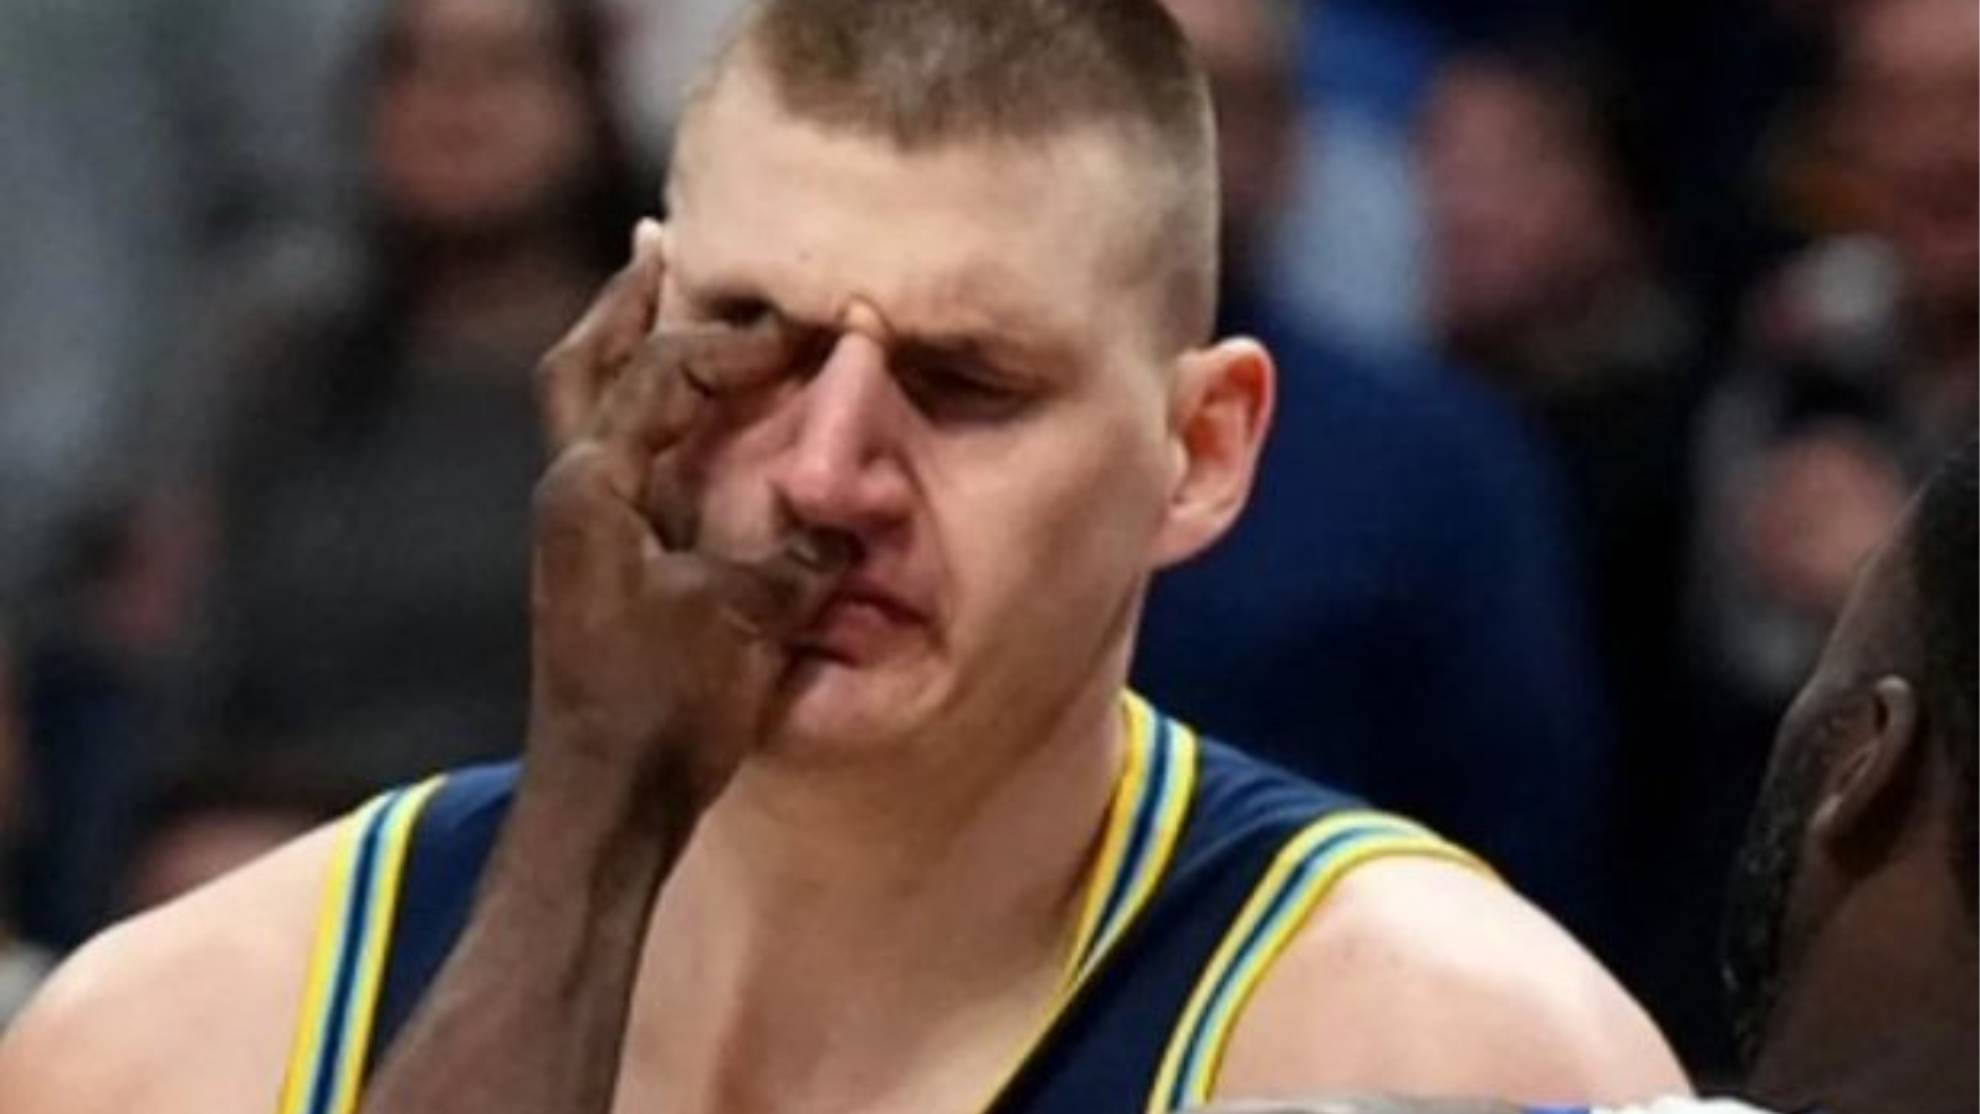 El brutal piquete de ojos de Draymond Green a Nikola Jokic que provocó la pelea de la noche en la NBA